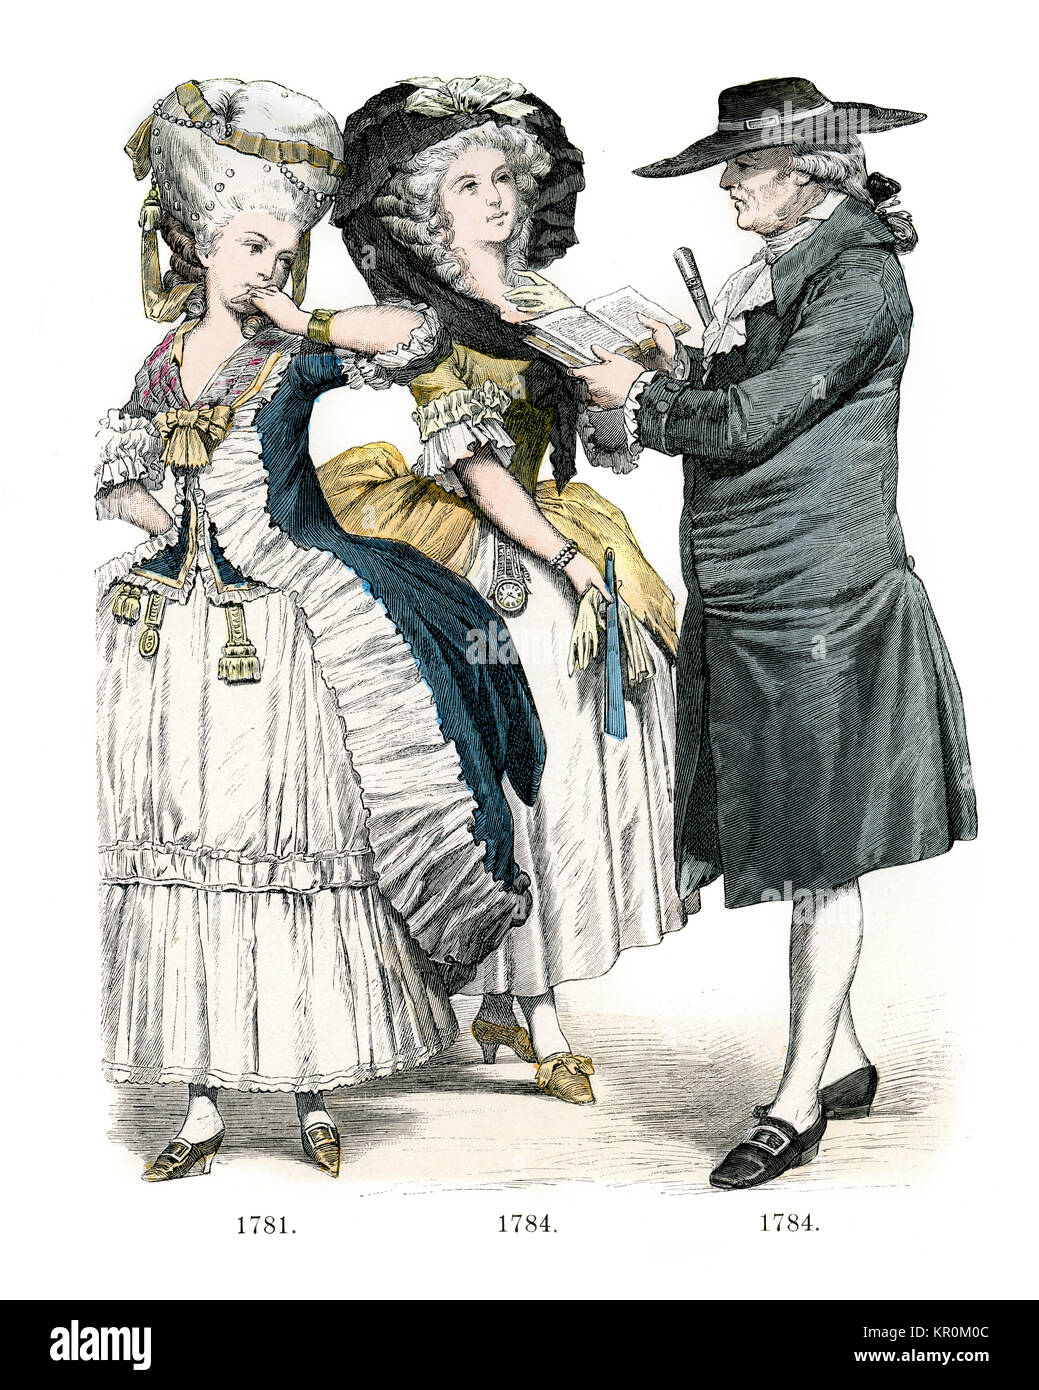 Los trajes de época de finales de siglo 18 Francia Foto de stock